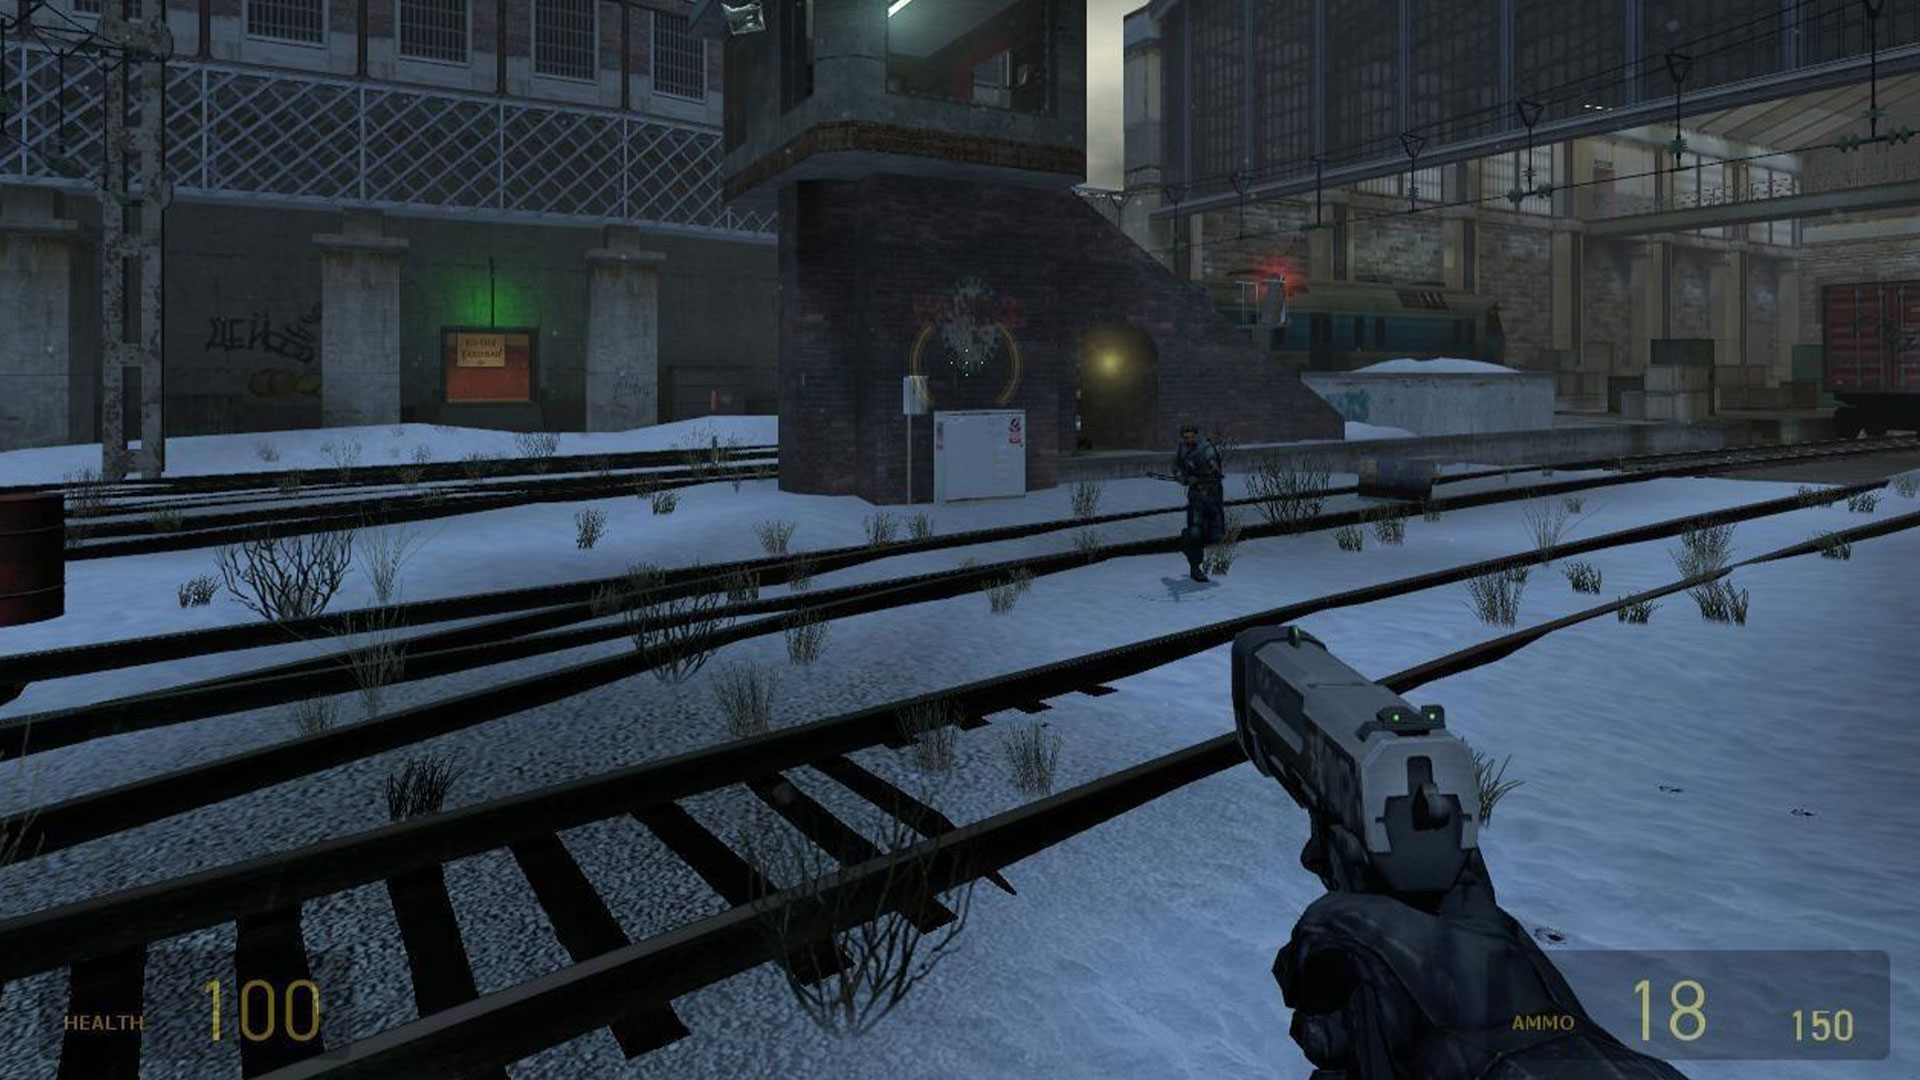 Schermata del deathmatch di Half-Life 2 che mostra l'azione multigiocatore online